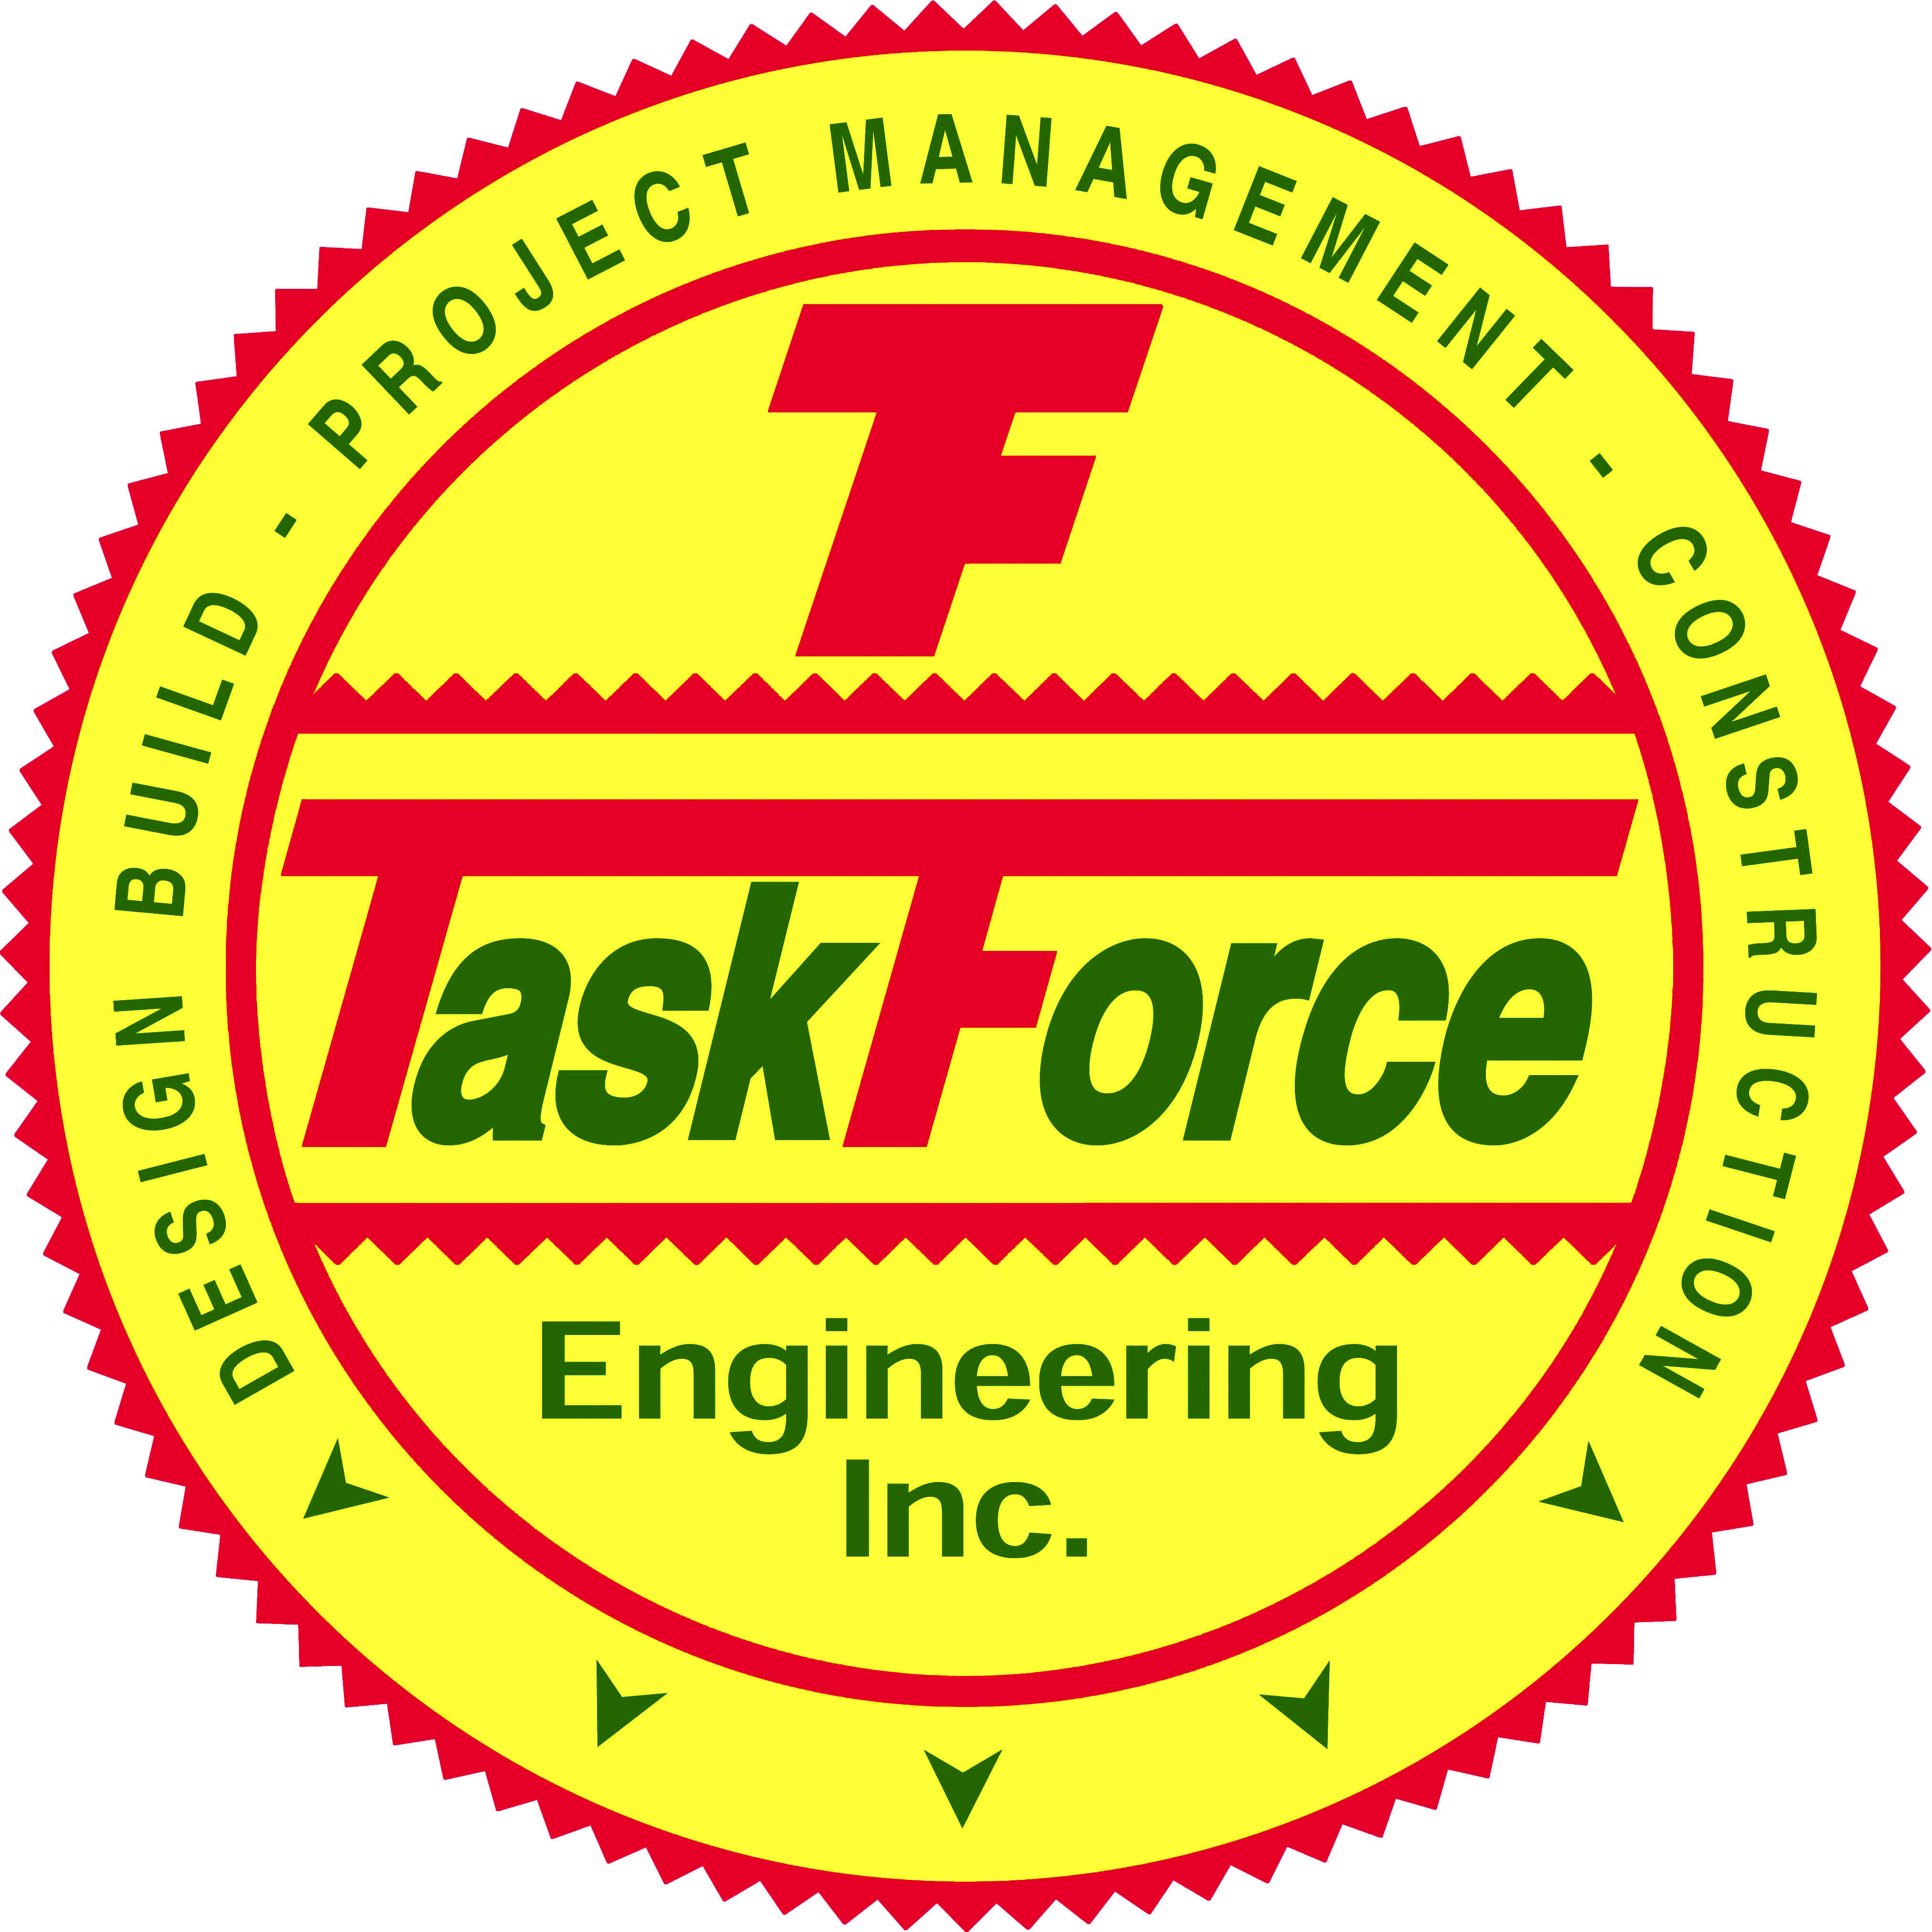 TaskForce Engineering